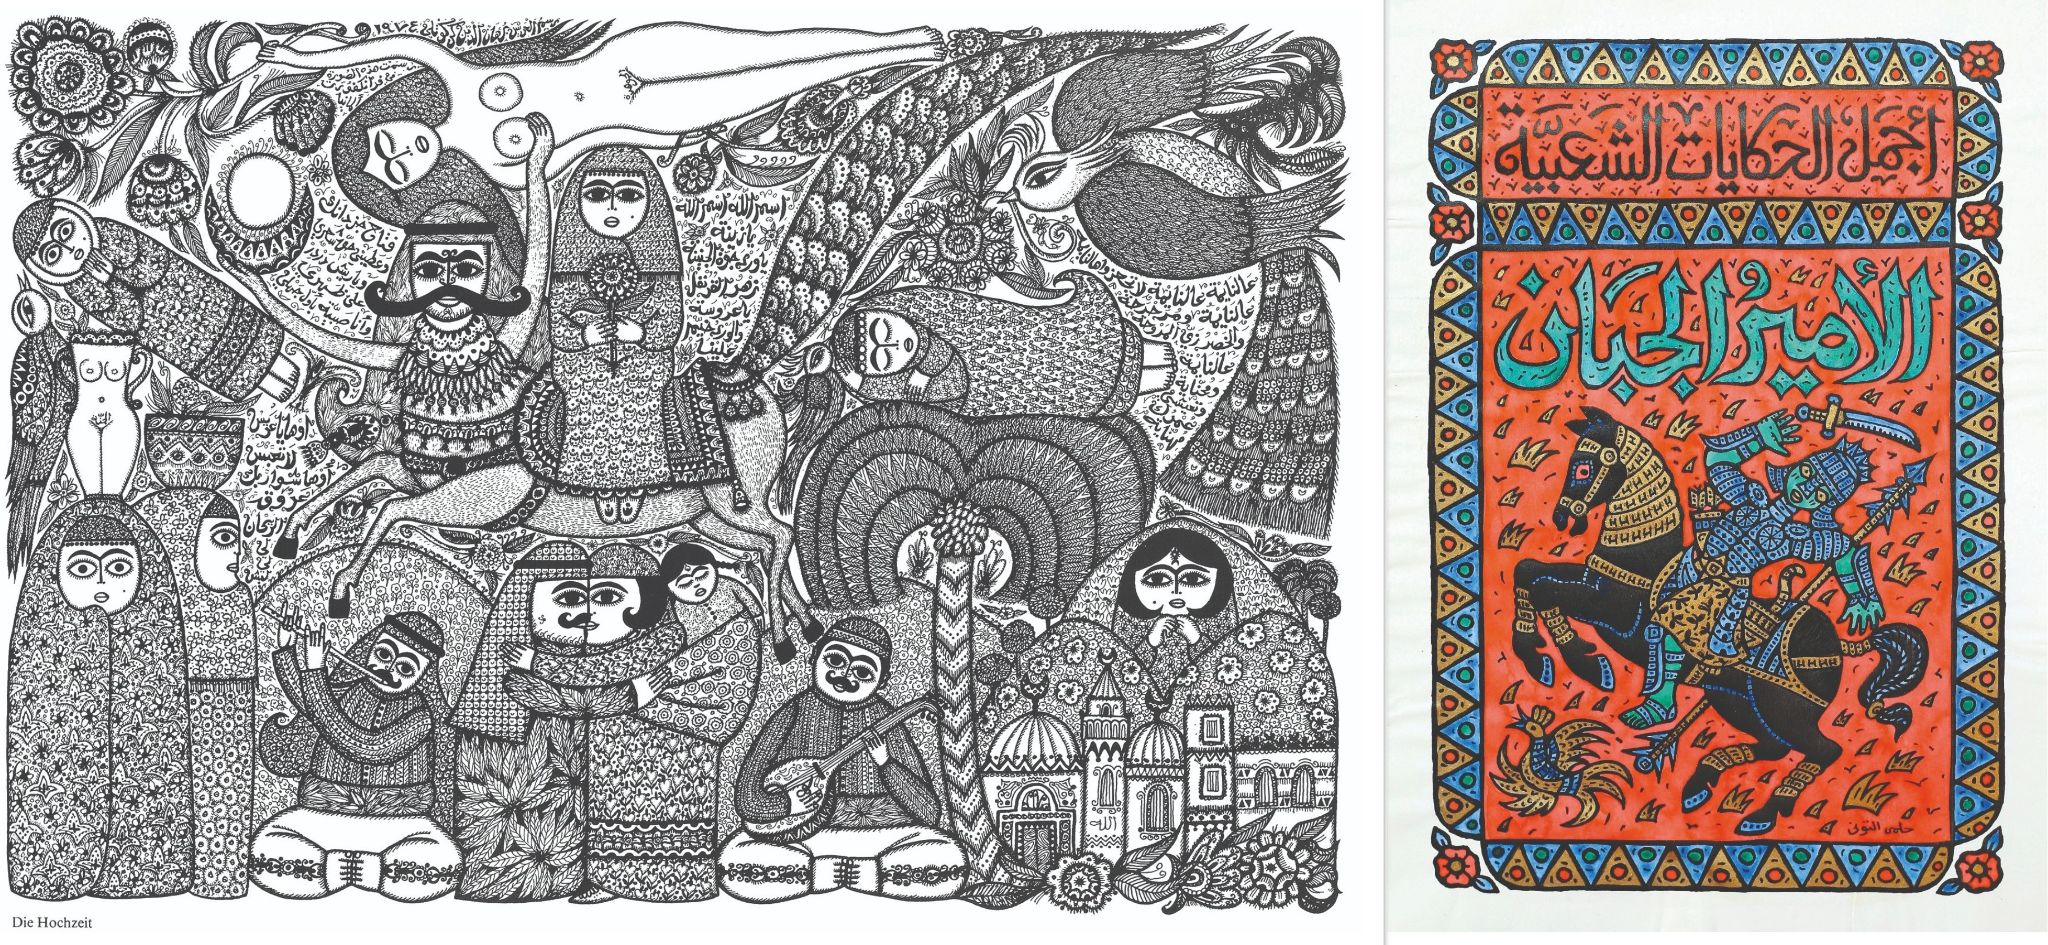 Les travaux de Burhan Karkoutly dans les années 1970 et de Helmi El-Touni dans les années 1990 proposent le même style vernaculaire et folklorique